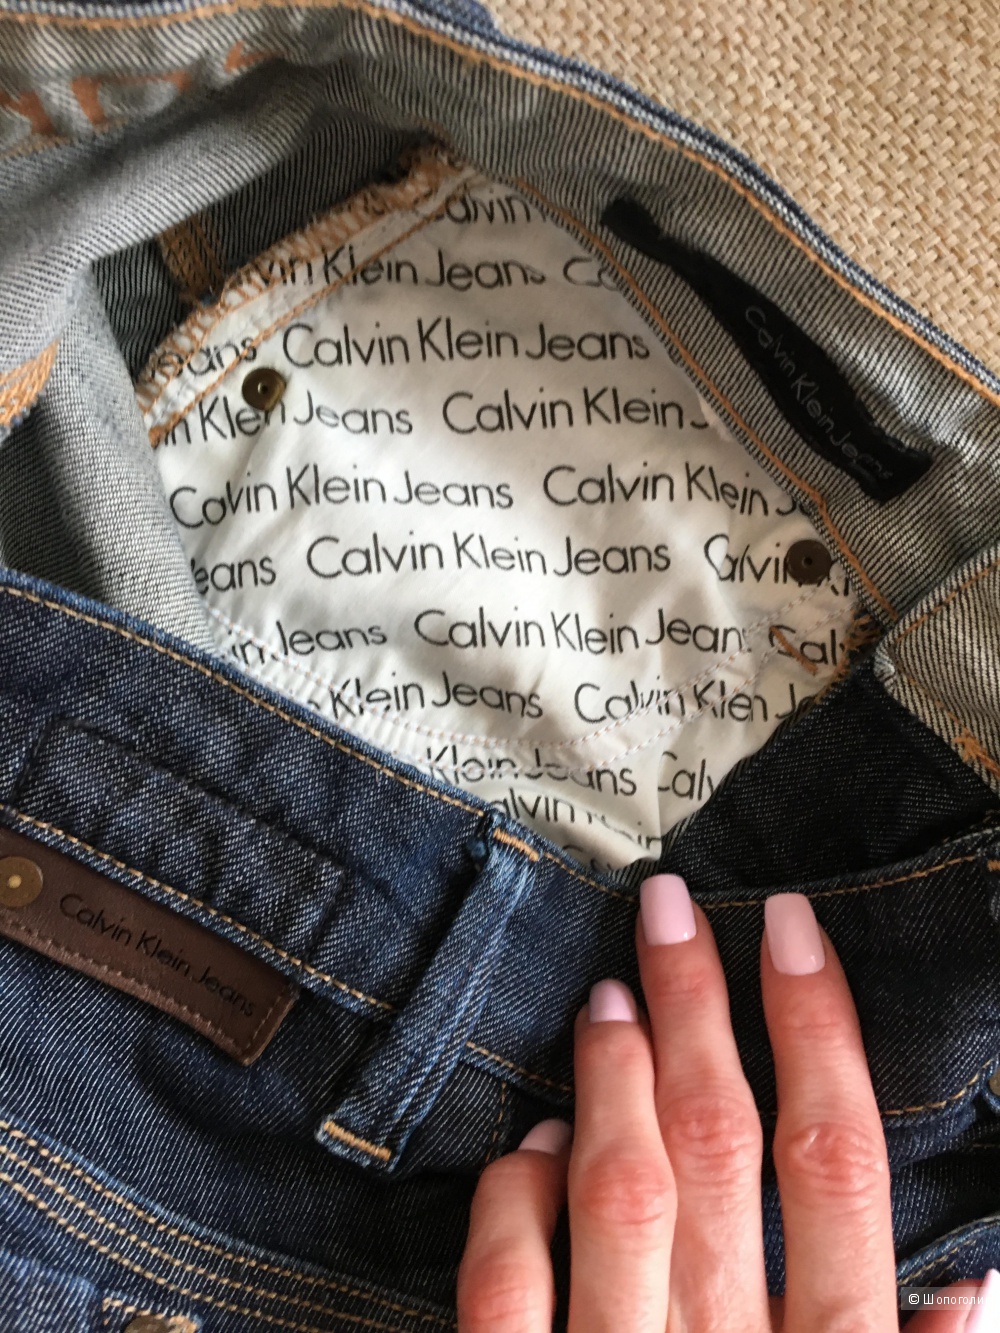 Джинсы Calvin Klein, 24 размер